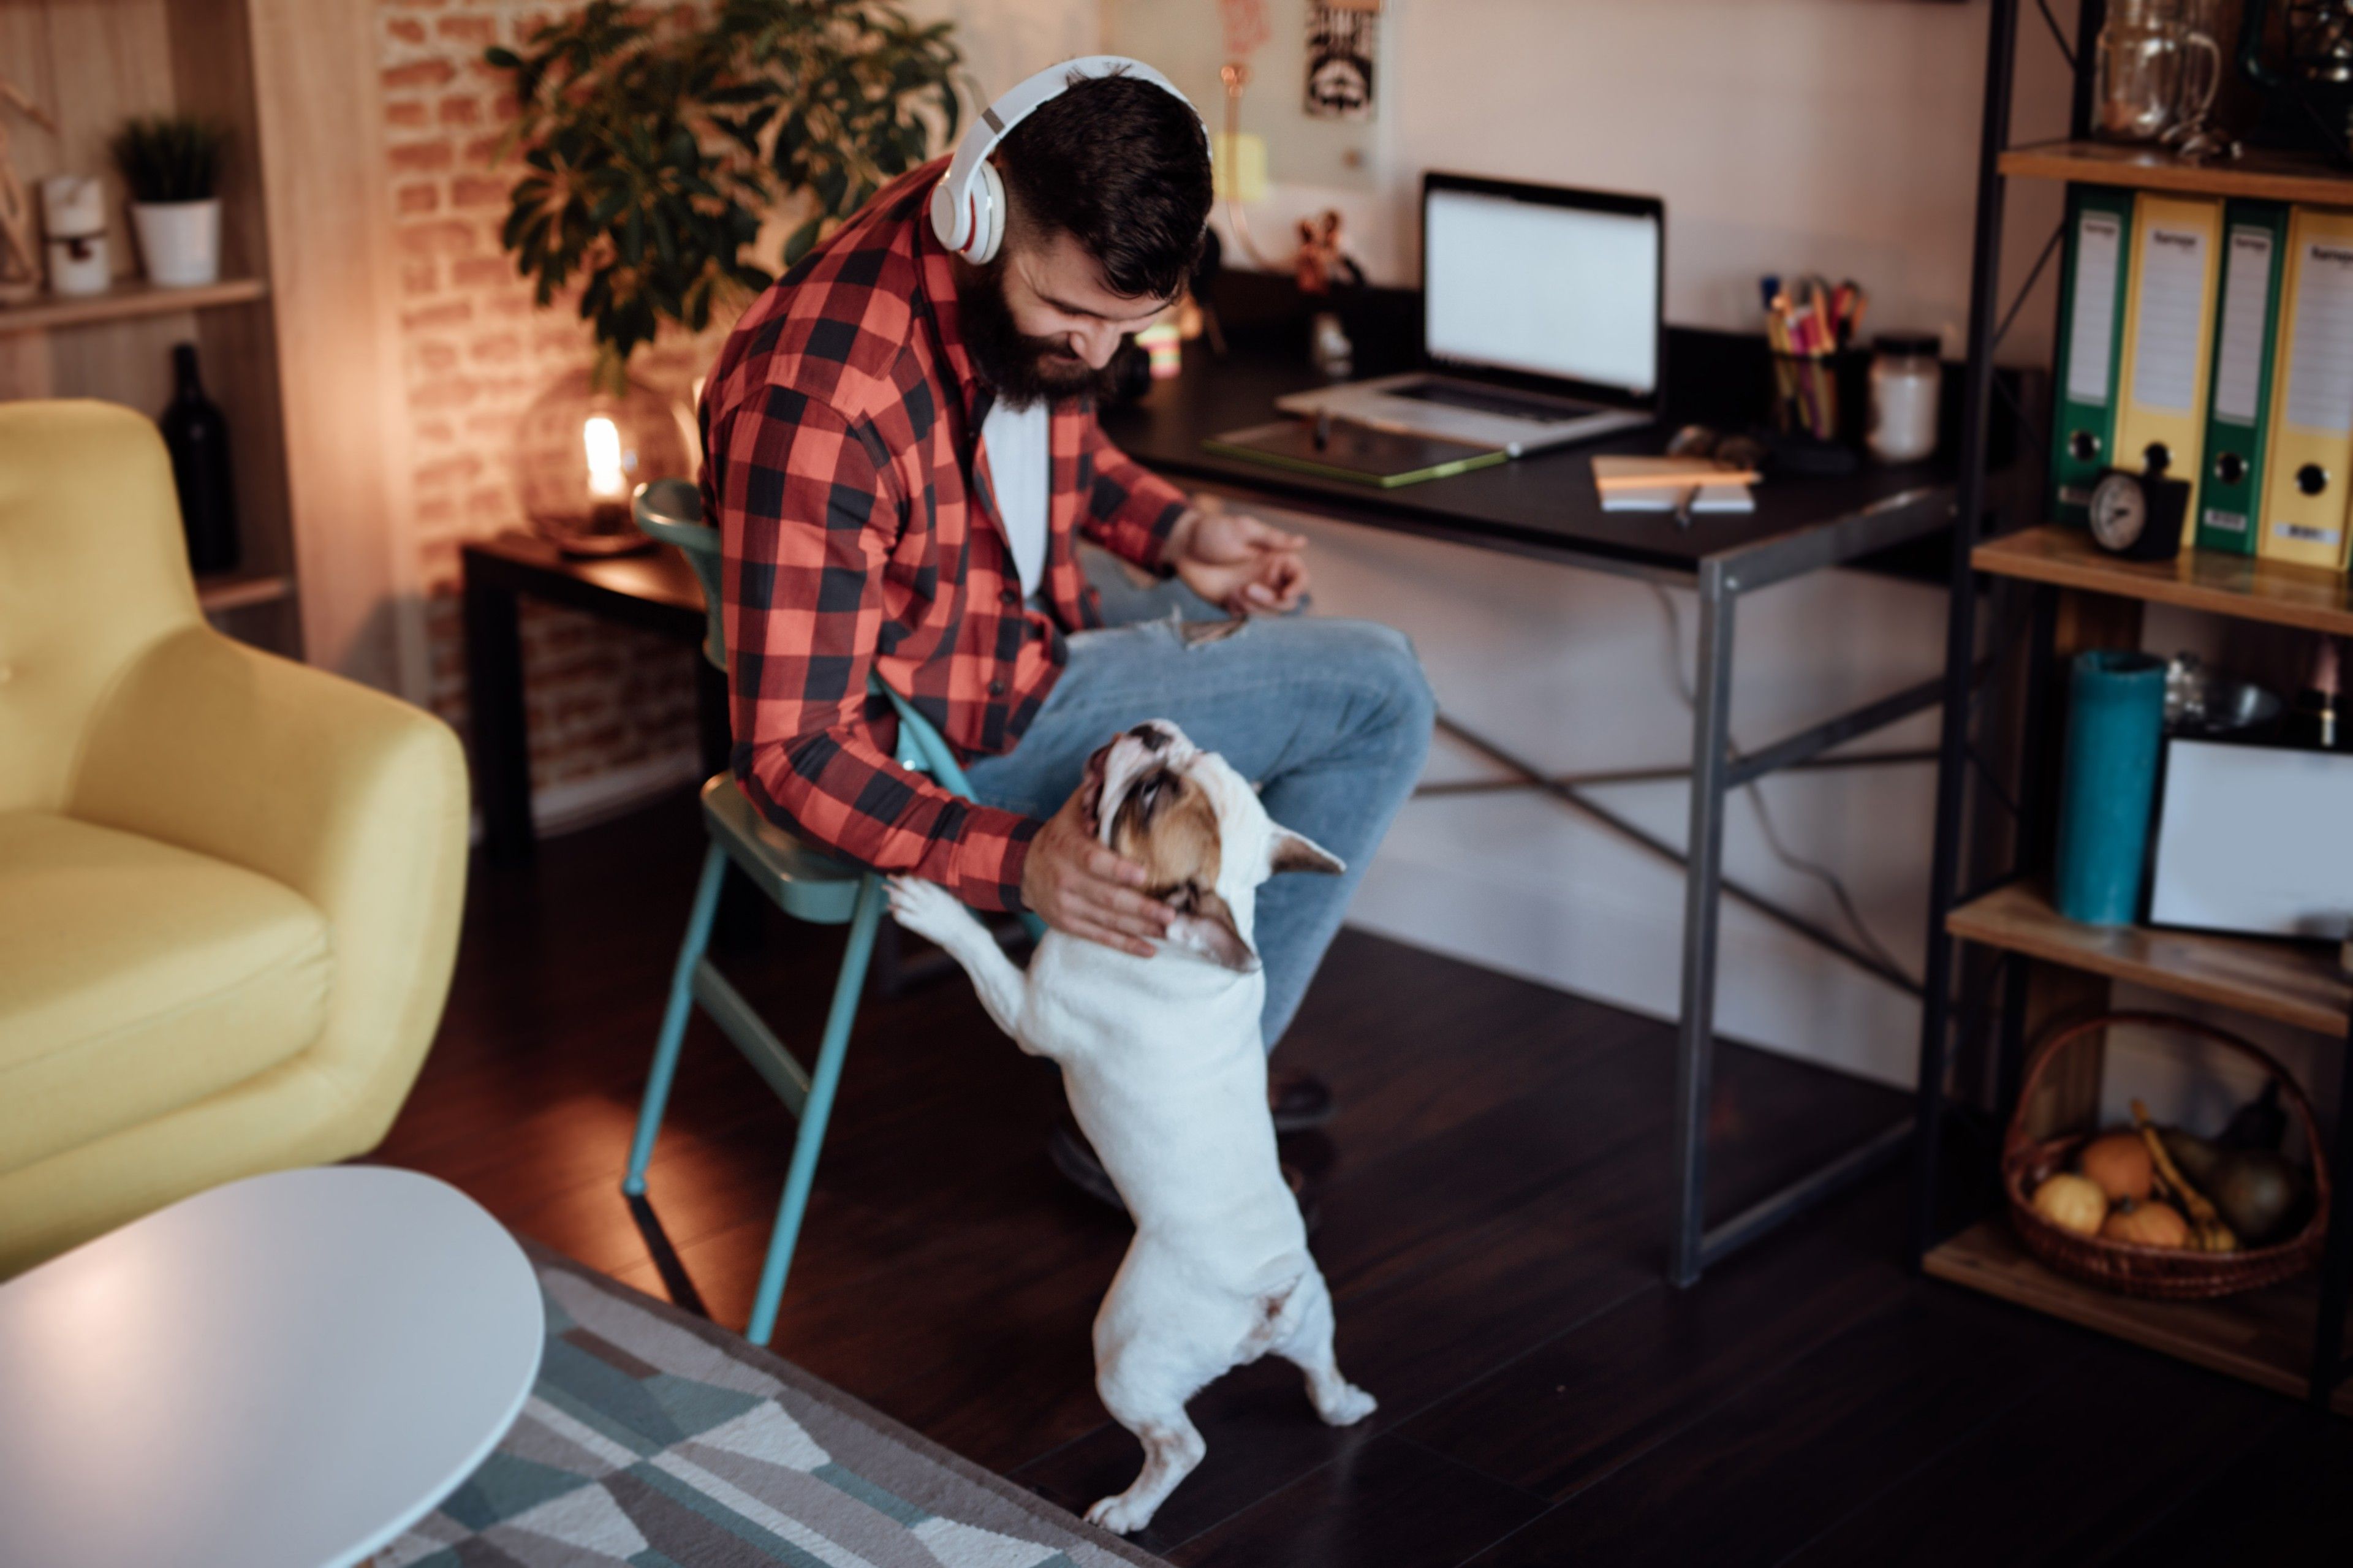 Pracownik zdalny korzysta z zalet pracy w domu, spędzając czas ze swoimi zwierzętami podczas pracy